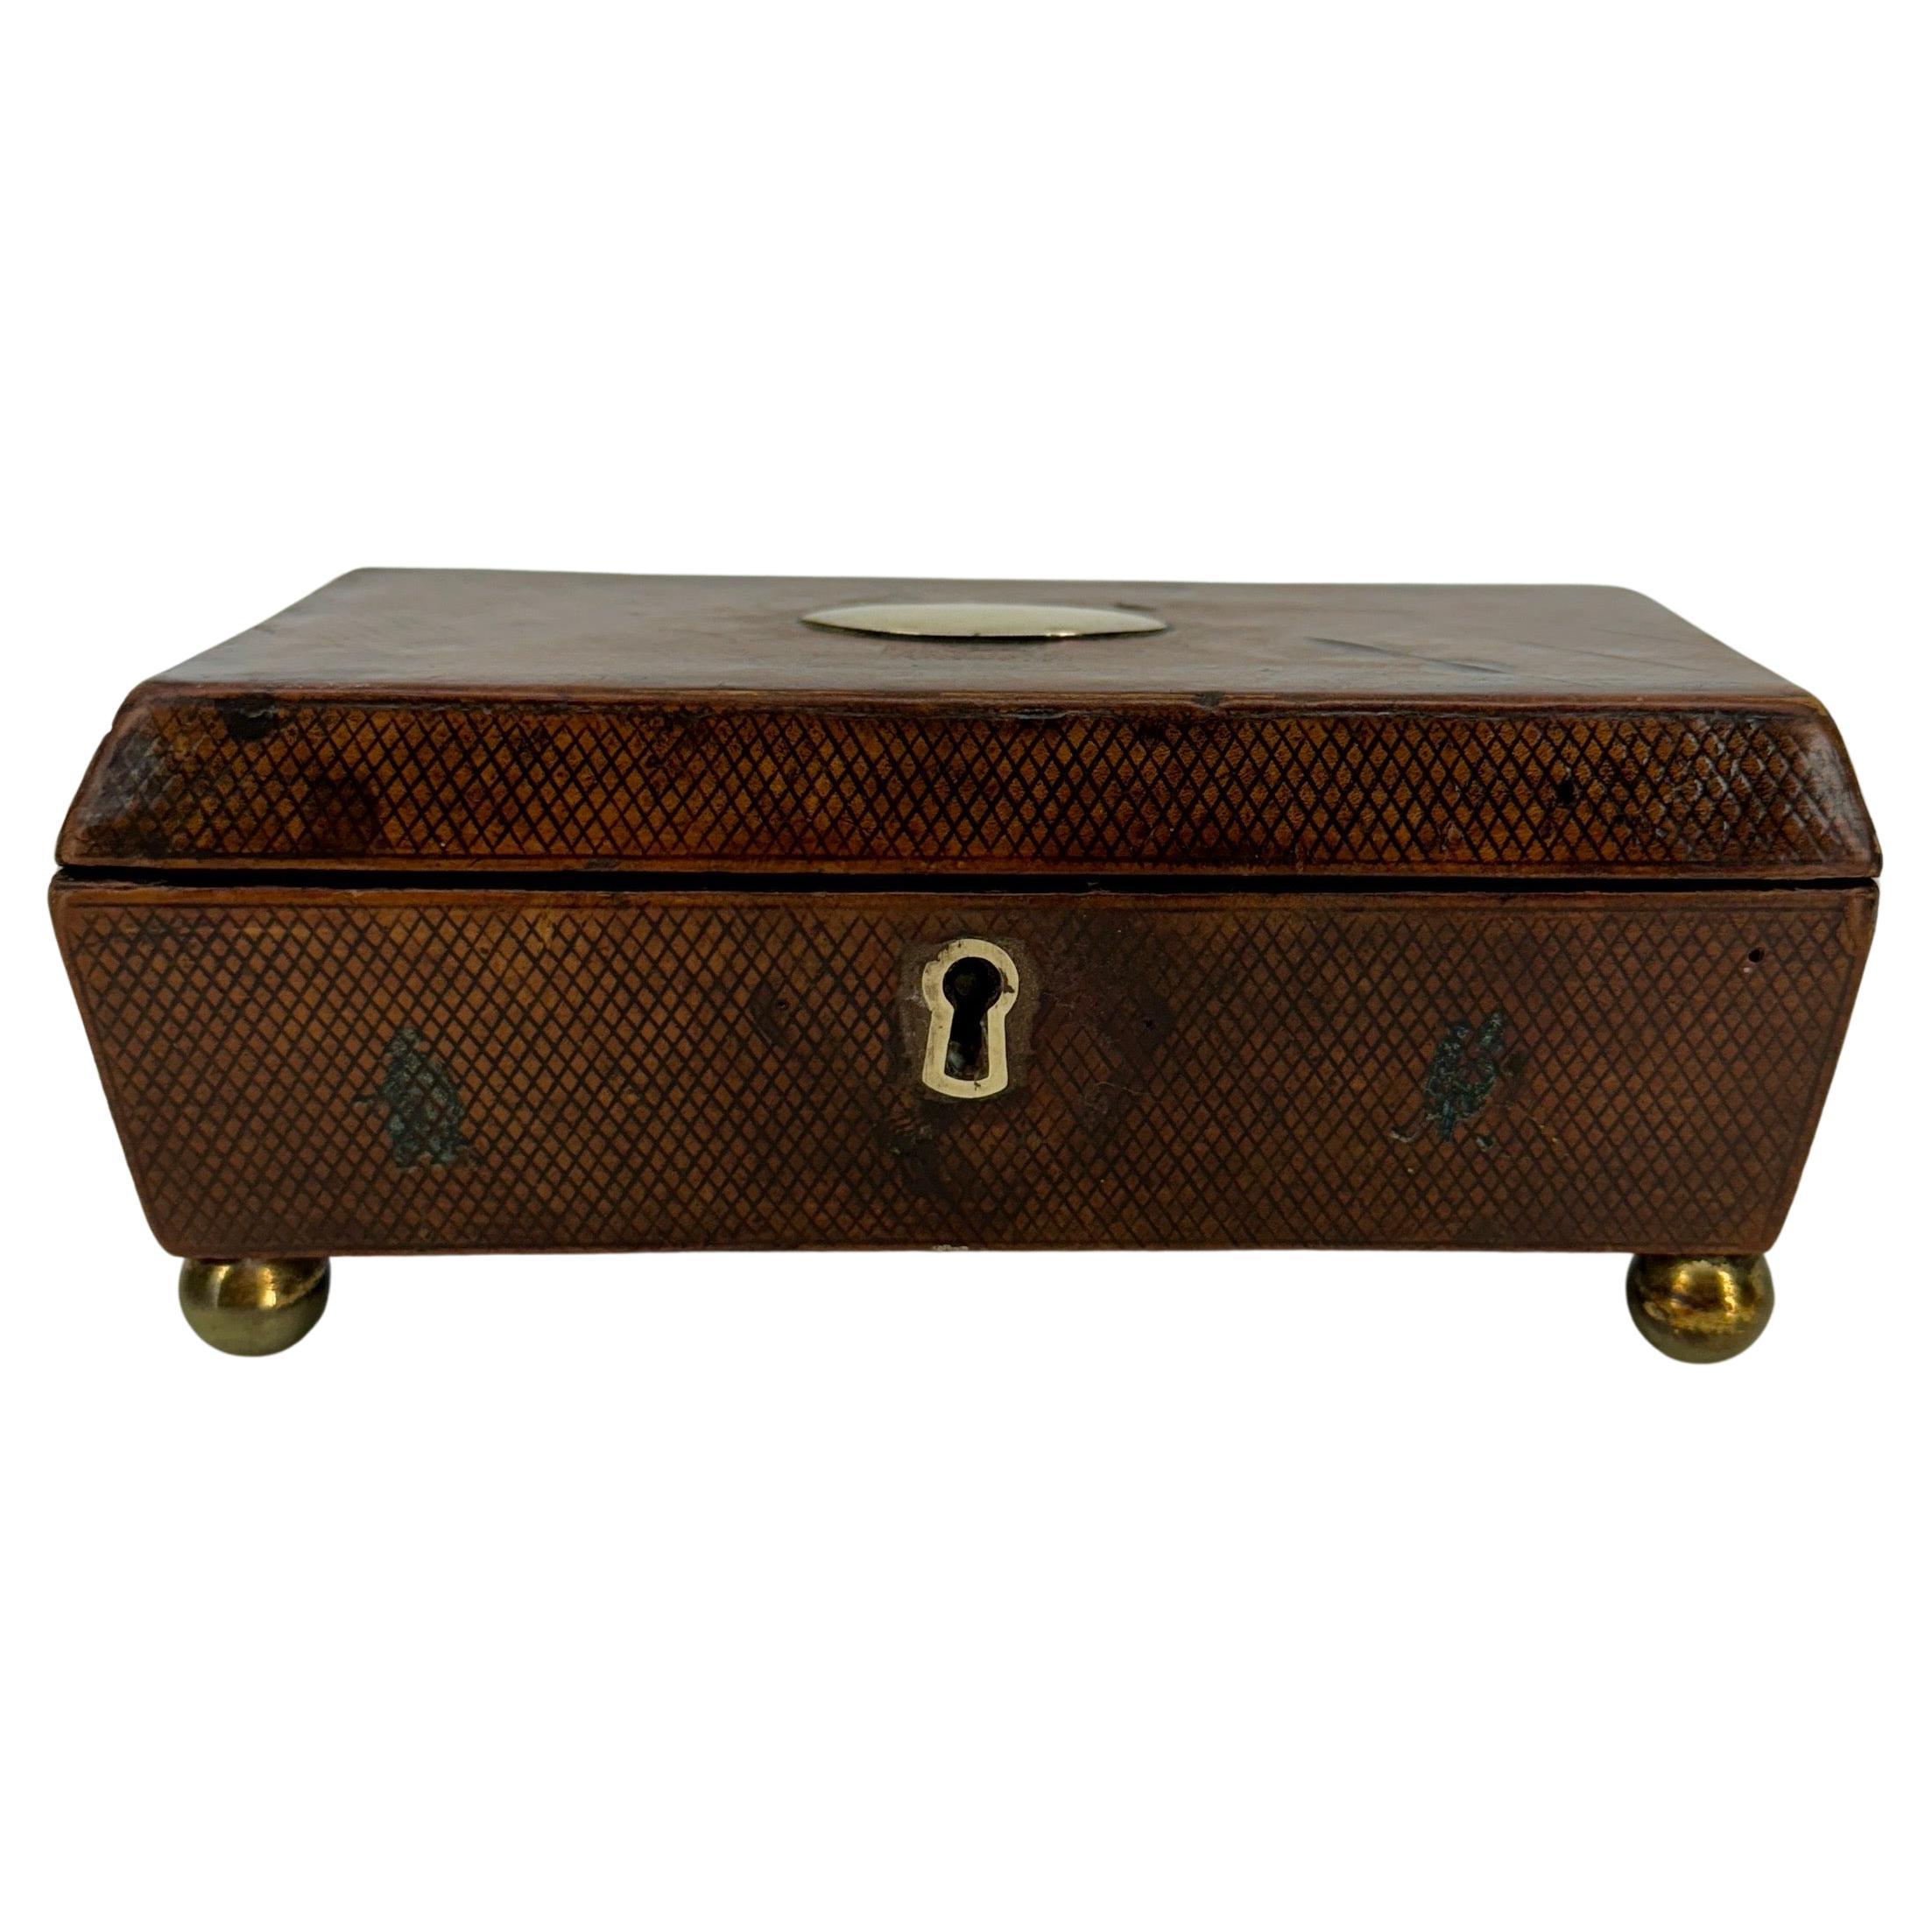 Petite boîte à bijoux rectangulaire en cuir sur petites boules en laiton avec motif de diamant.  

